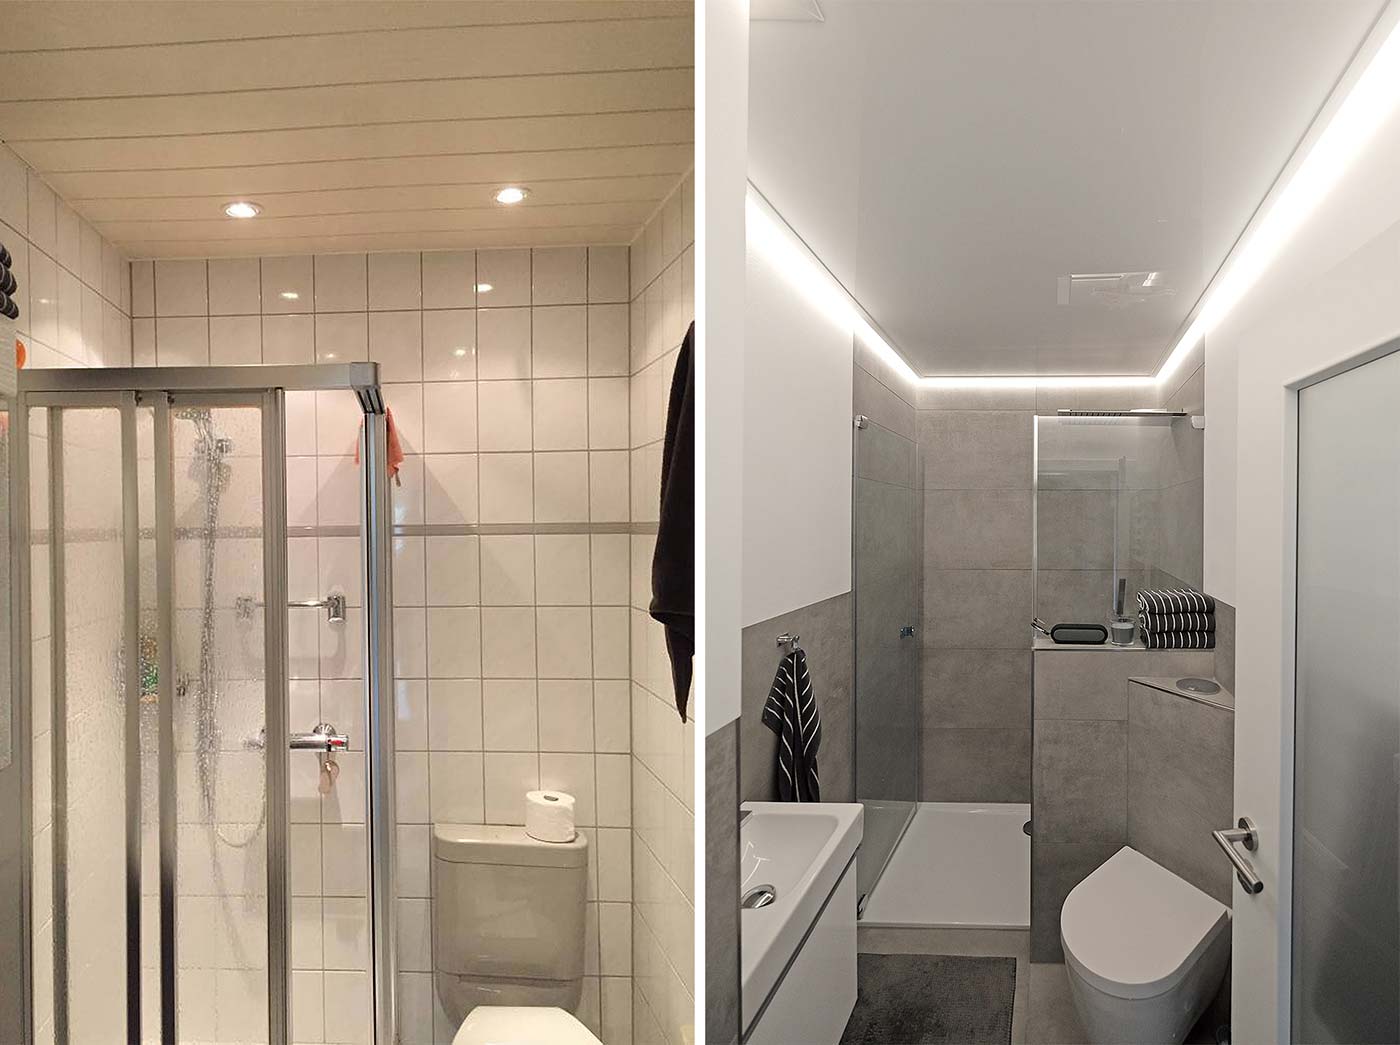 Das Badezimmer im Vorher-Nachhervergleich. Kaum noch wiederzuerkennen dank moderner Fliesen und stylischer PLAMECO-Decke in Hochglanz-Weiß und mit umlaufenden LED-Stripes